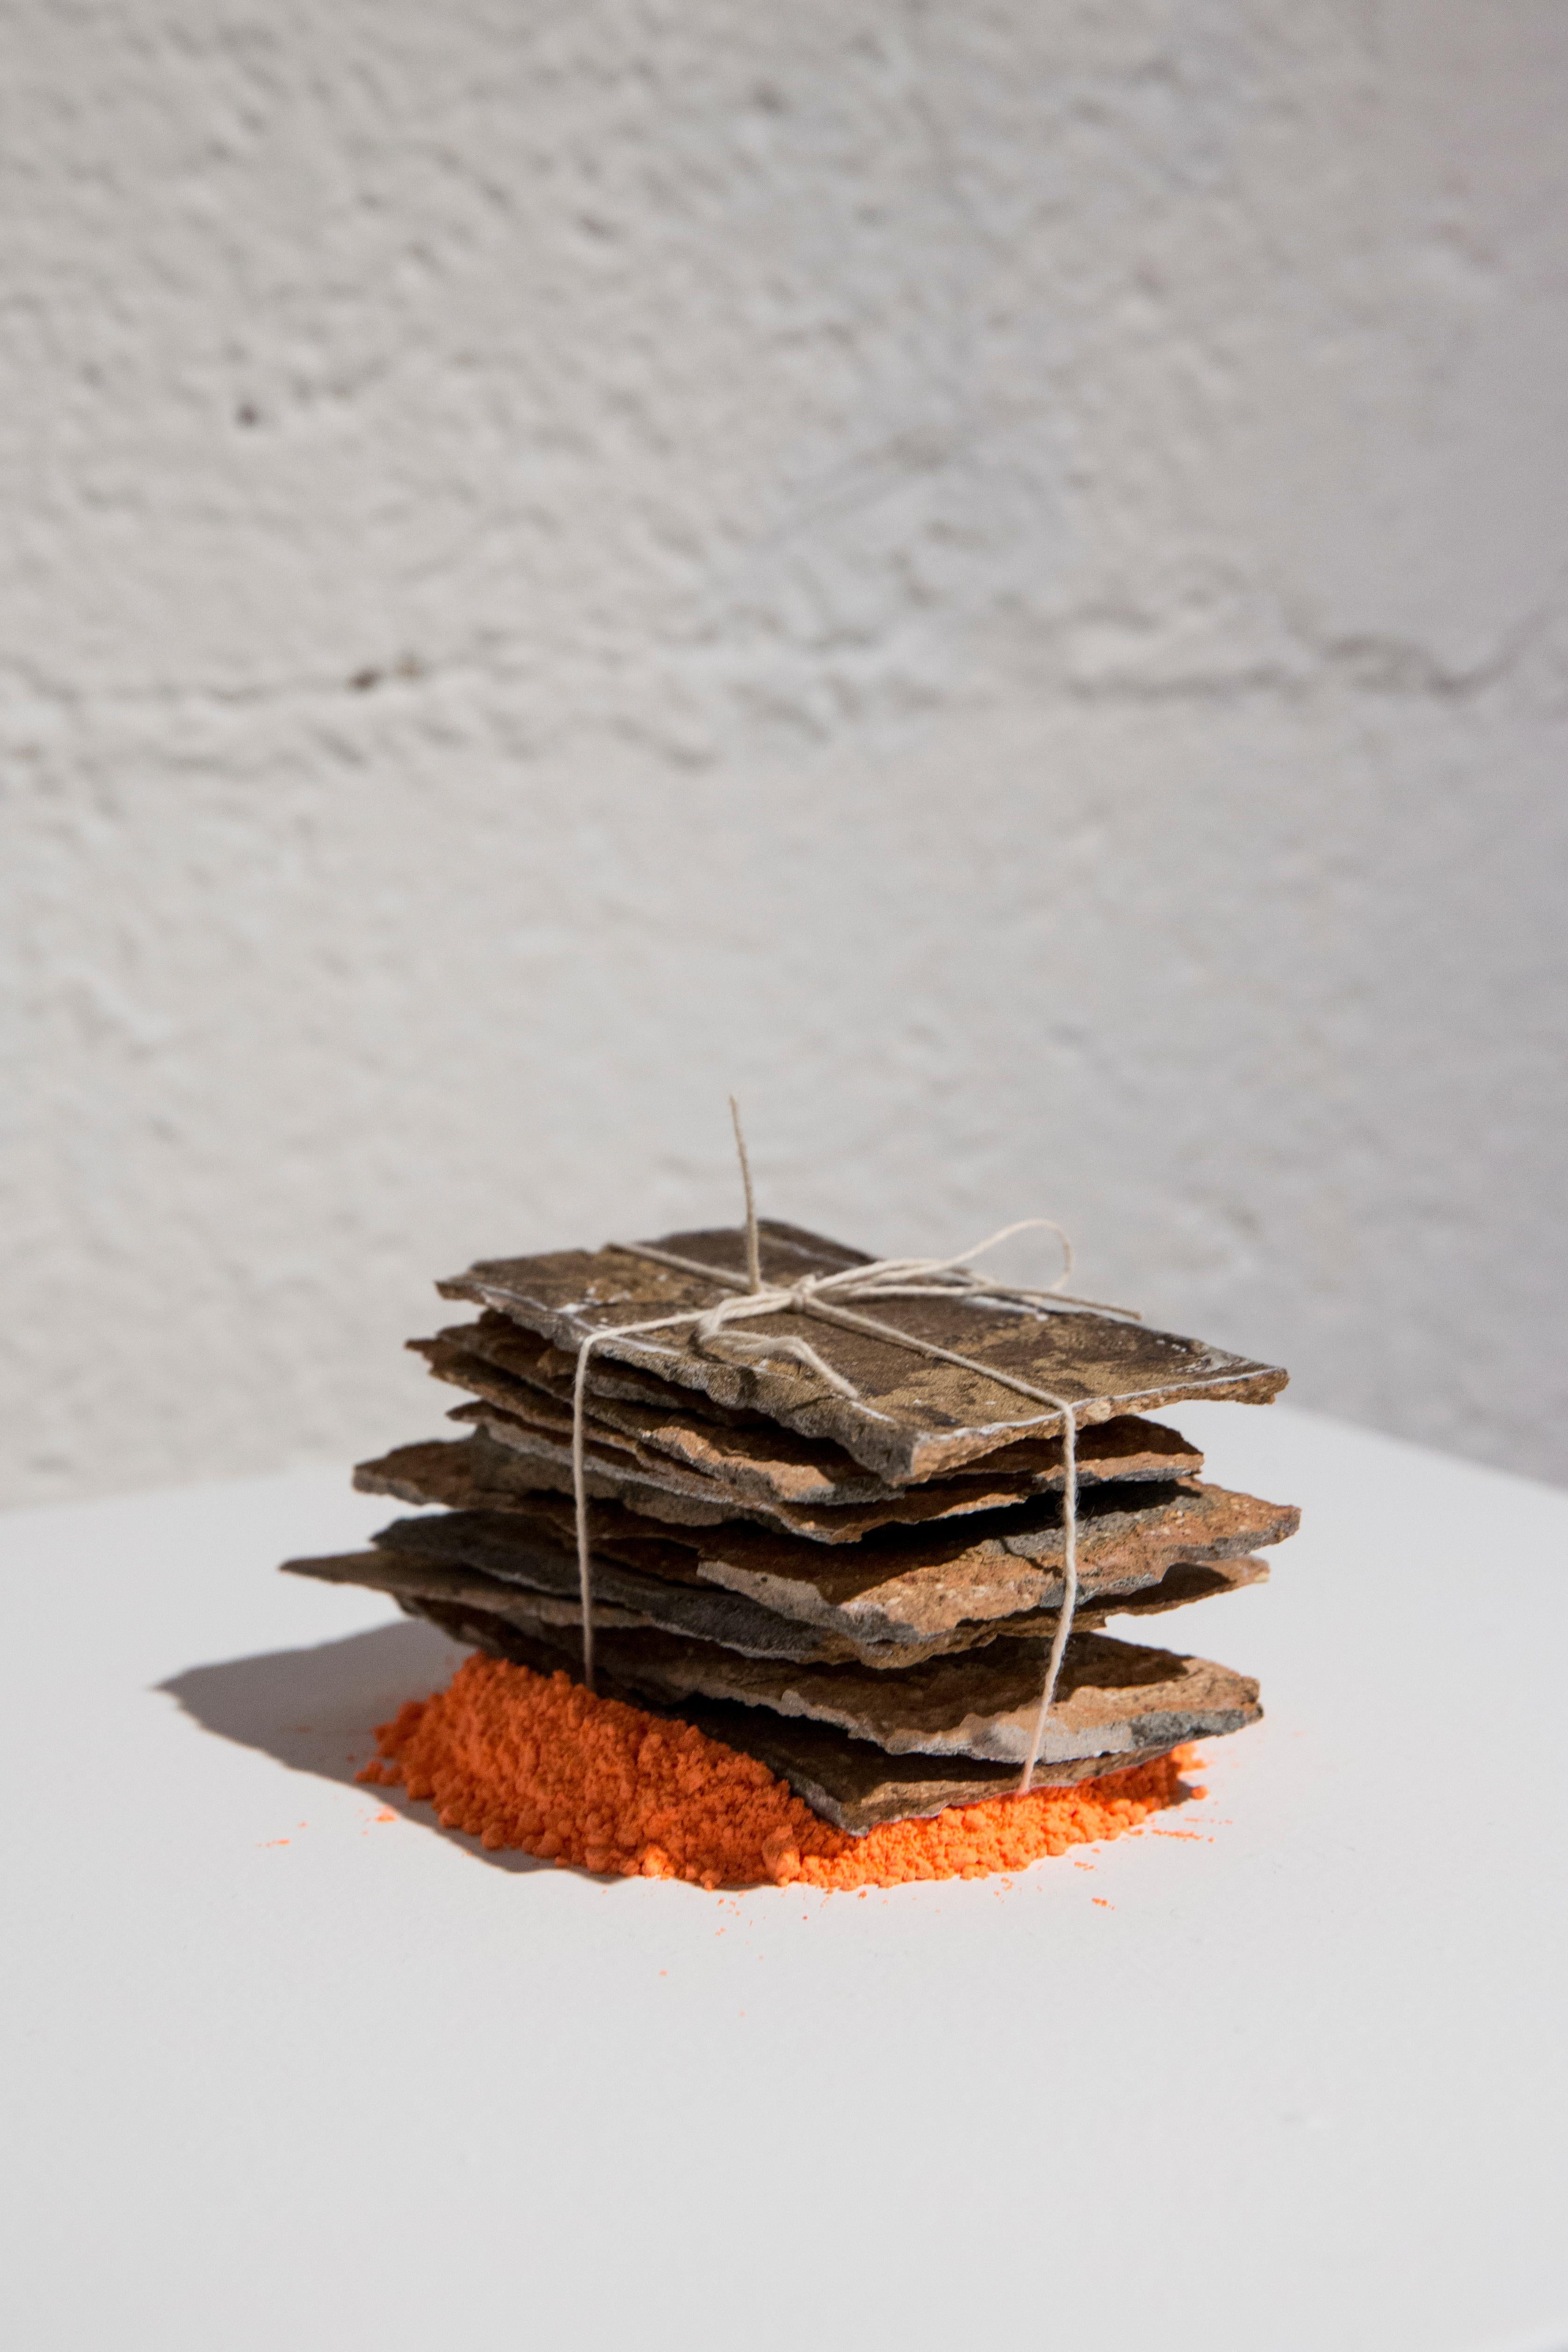 CINCHES (AUSGESCHNITTENES BRICK) – industrielle, reduzierte, minimalistische Skulptur, orange (Braun), Abstract Sculpture, von Brian Jobe